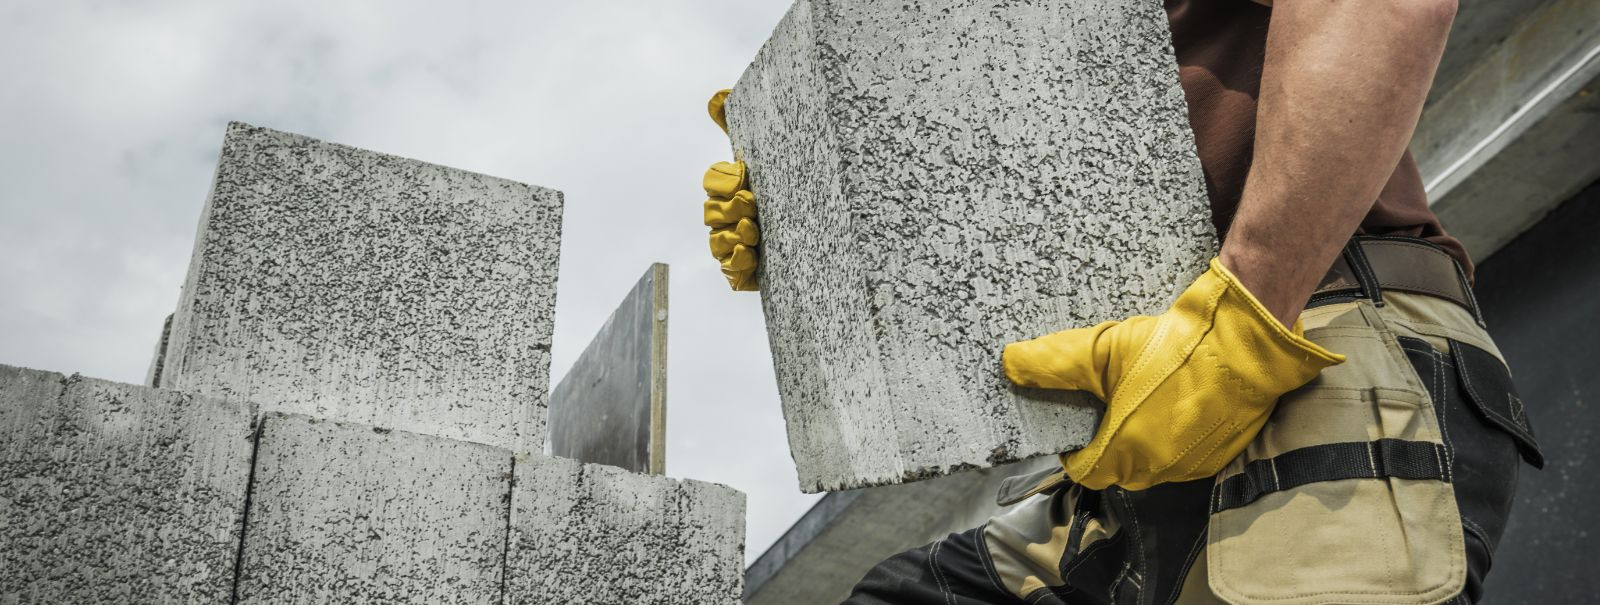 Betoon ja müüritööd on ehitustööstuse alustalad, tuntud ...